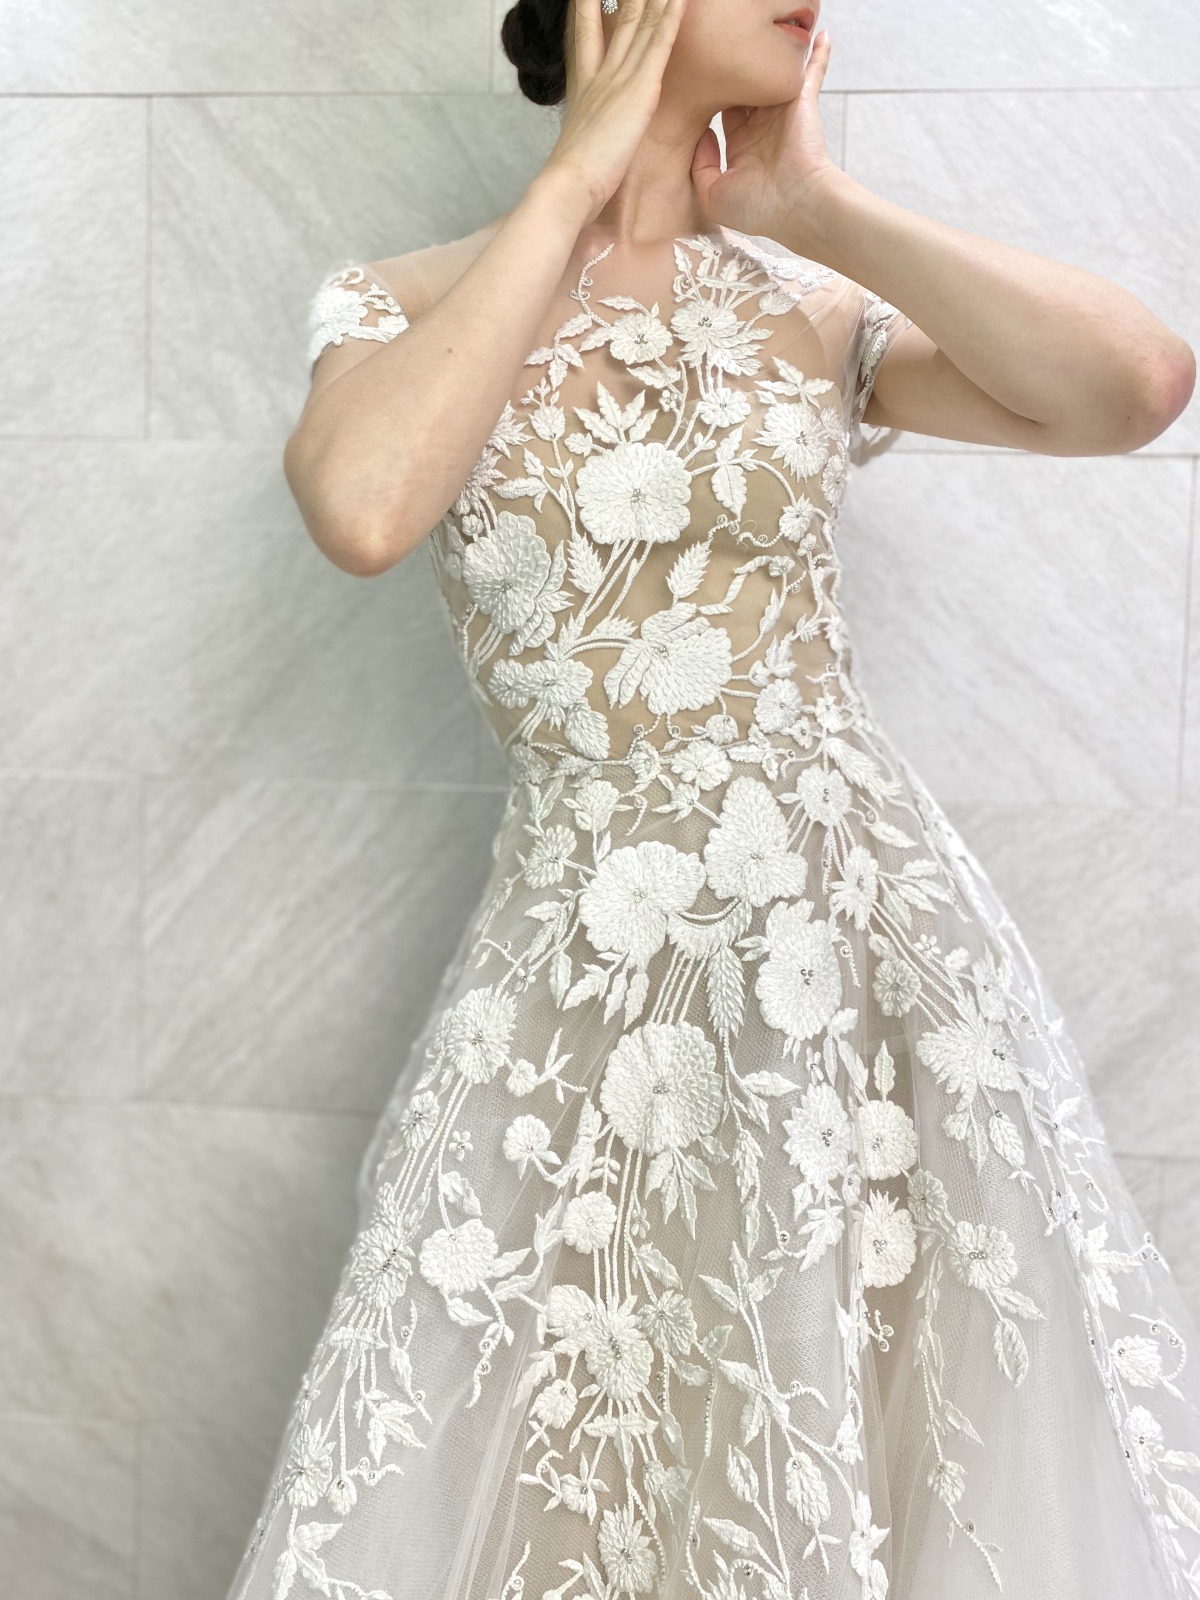 ザトリートドレッシングアディション店に入荷したリームアクラの新作ウェディングドレスは、フラワー刺繍が美しいAラインのドレス